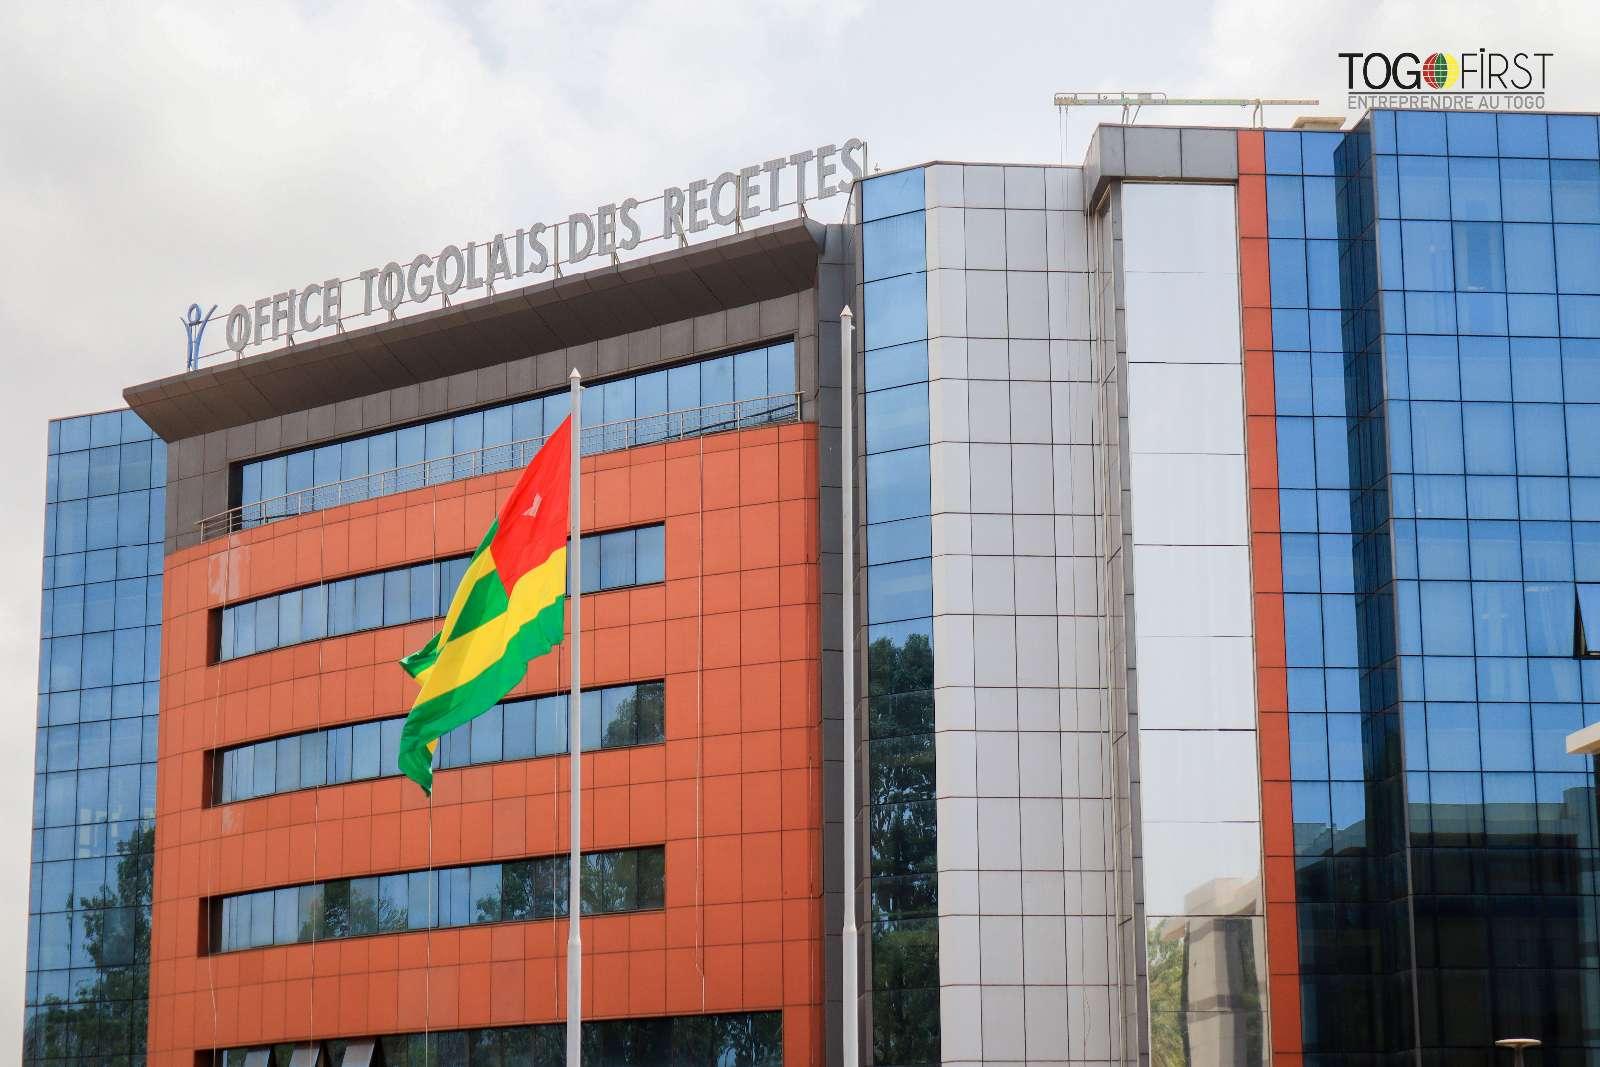 Office Togolais des Recettes (OTR)